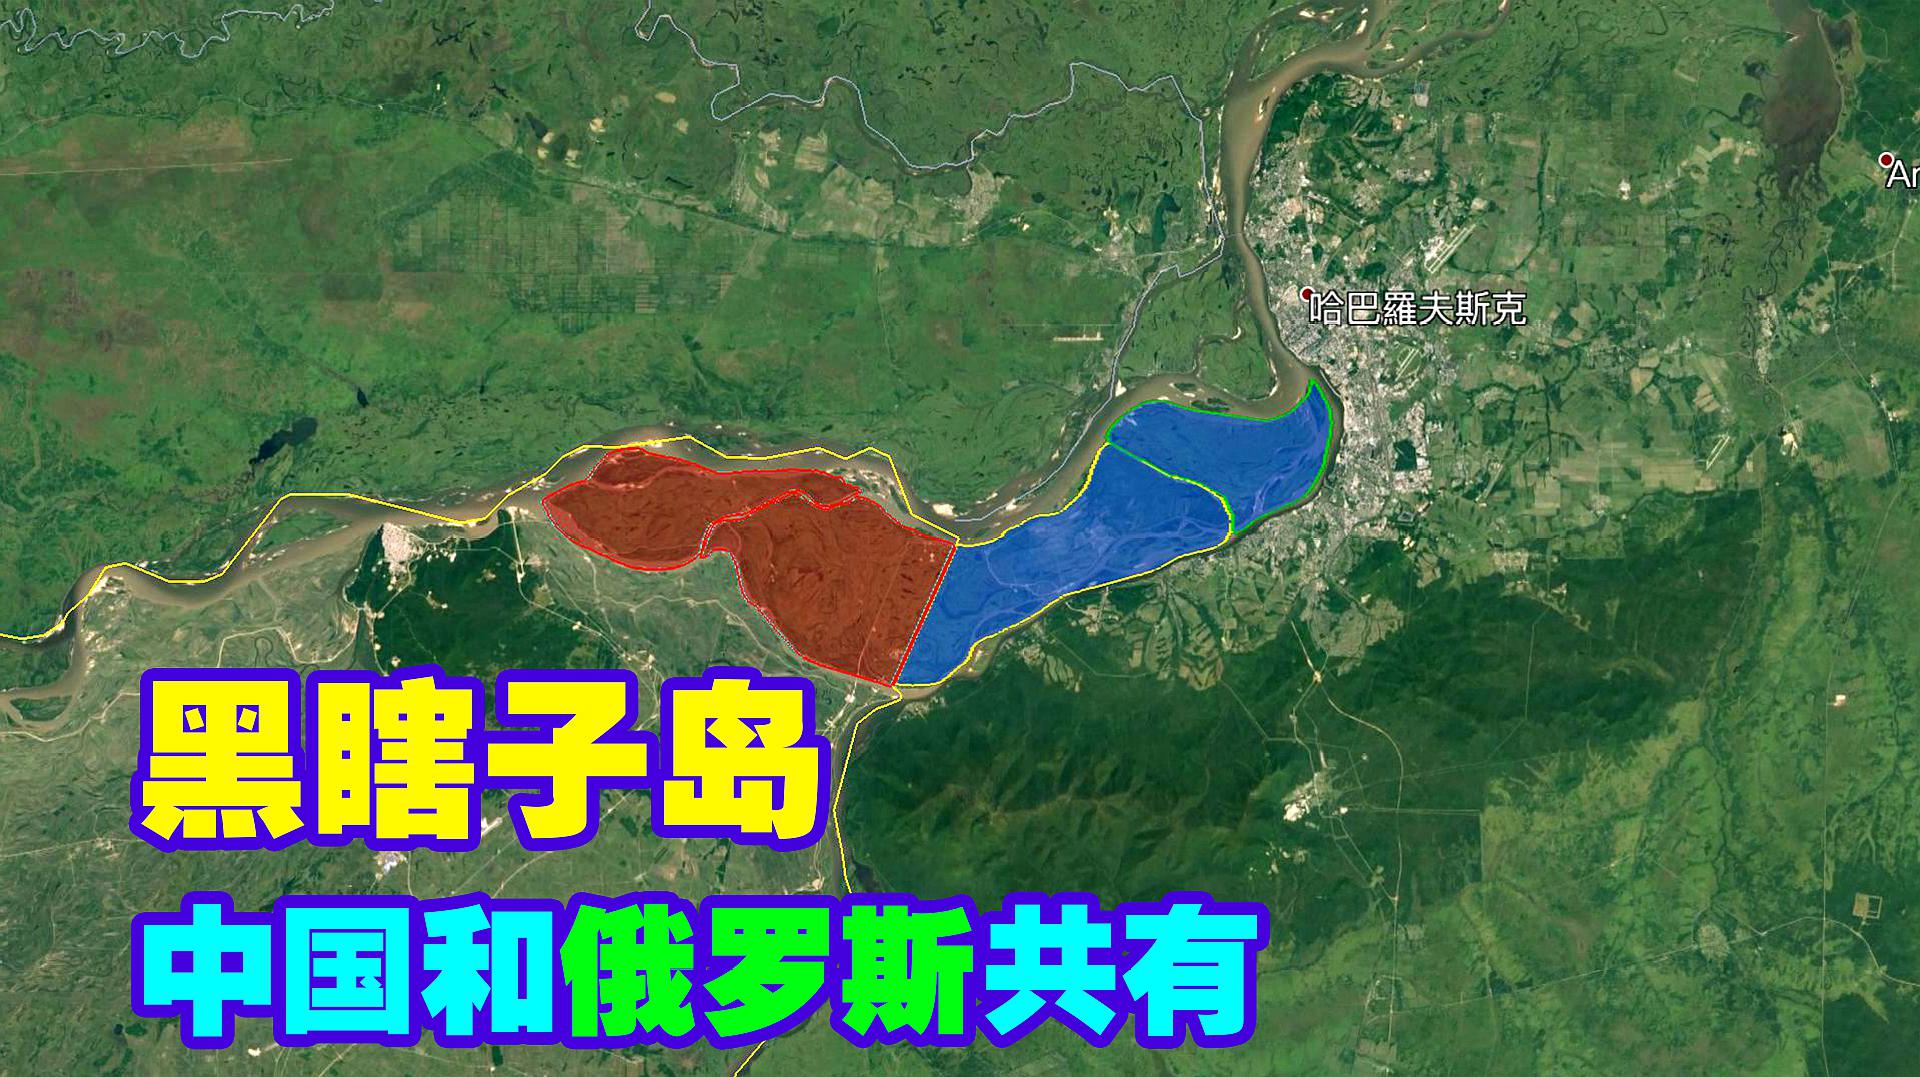 中俄共有岛屿:黑瞎子岛卫星图,不到中国边疆不知中国之伟大!